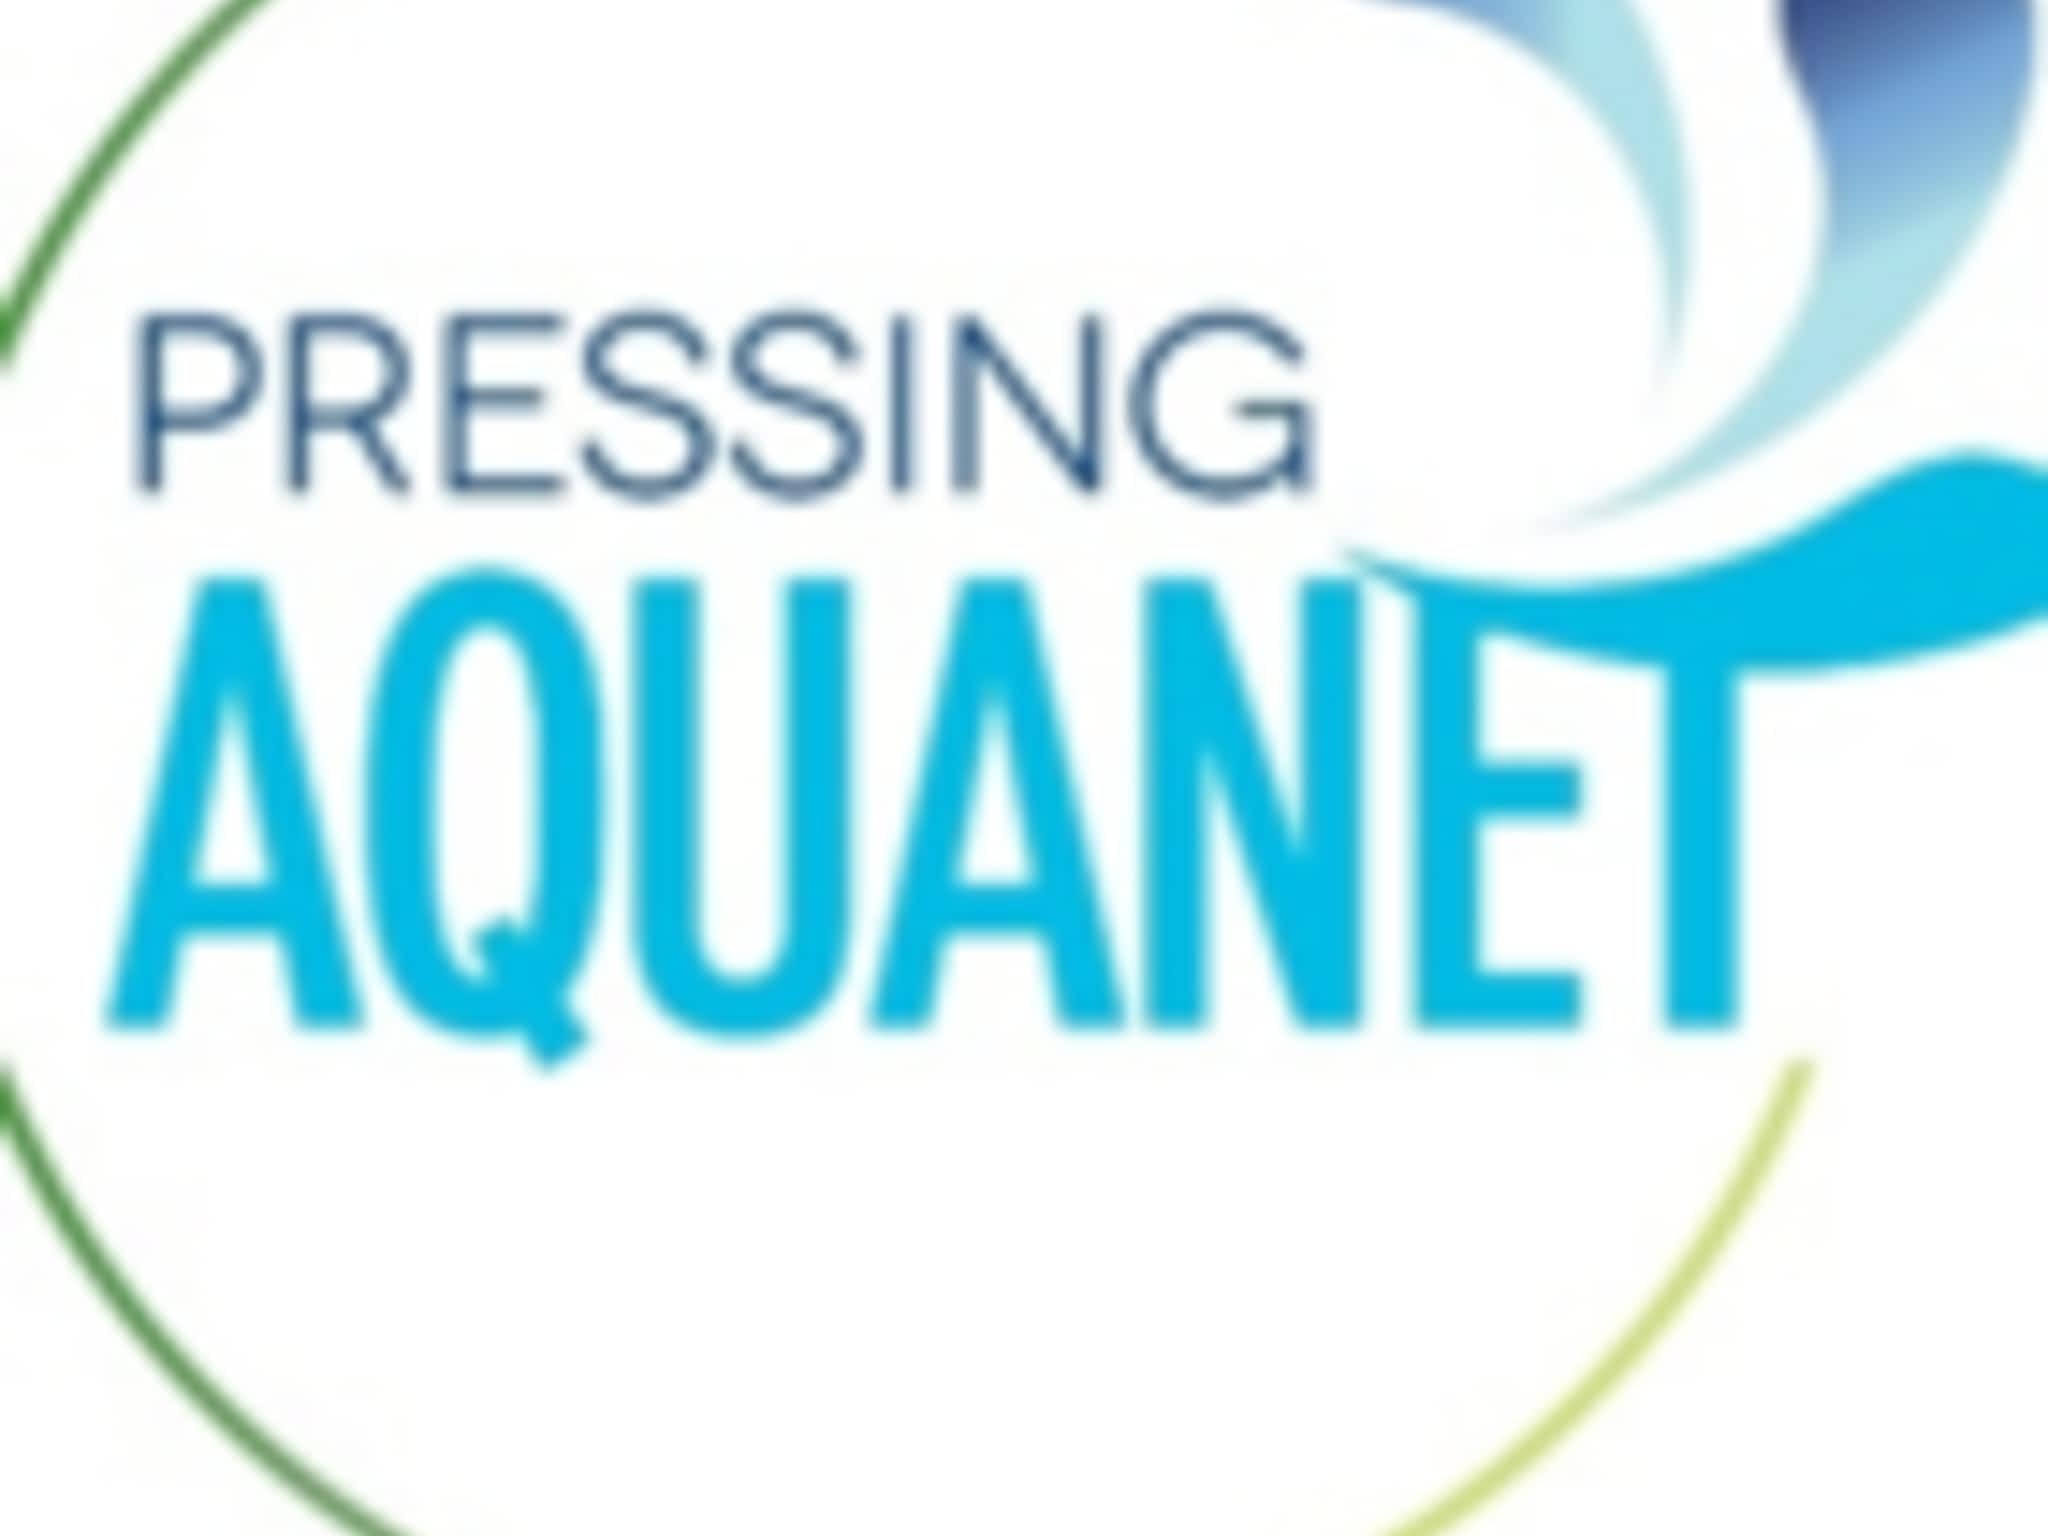 photo Pressing Aquanet